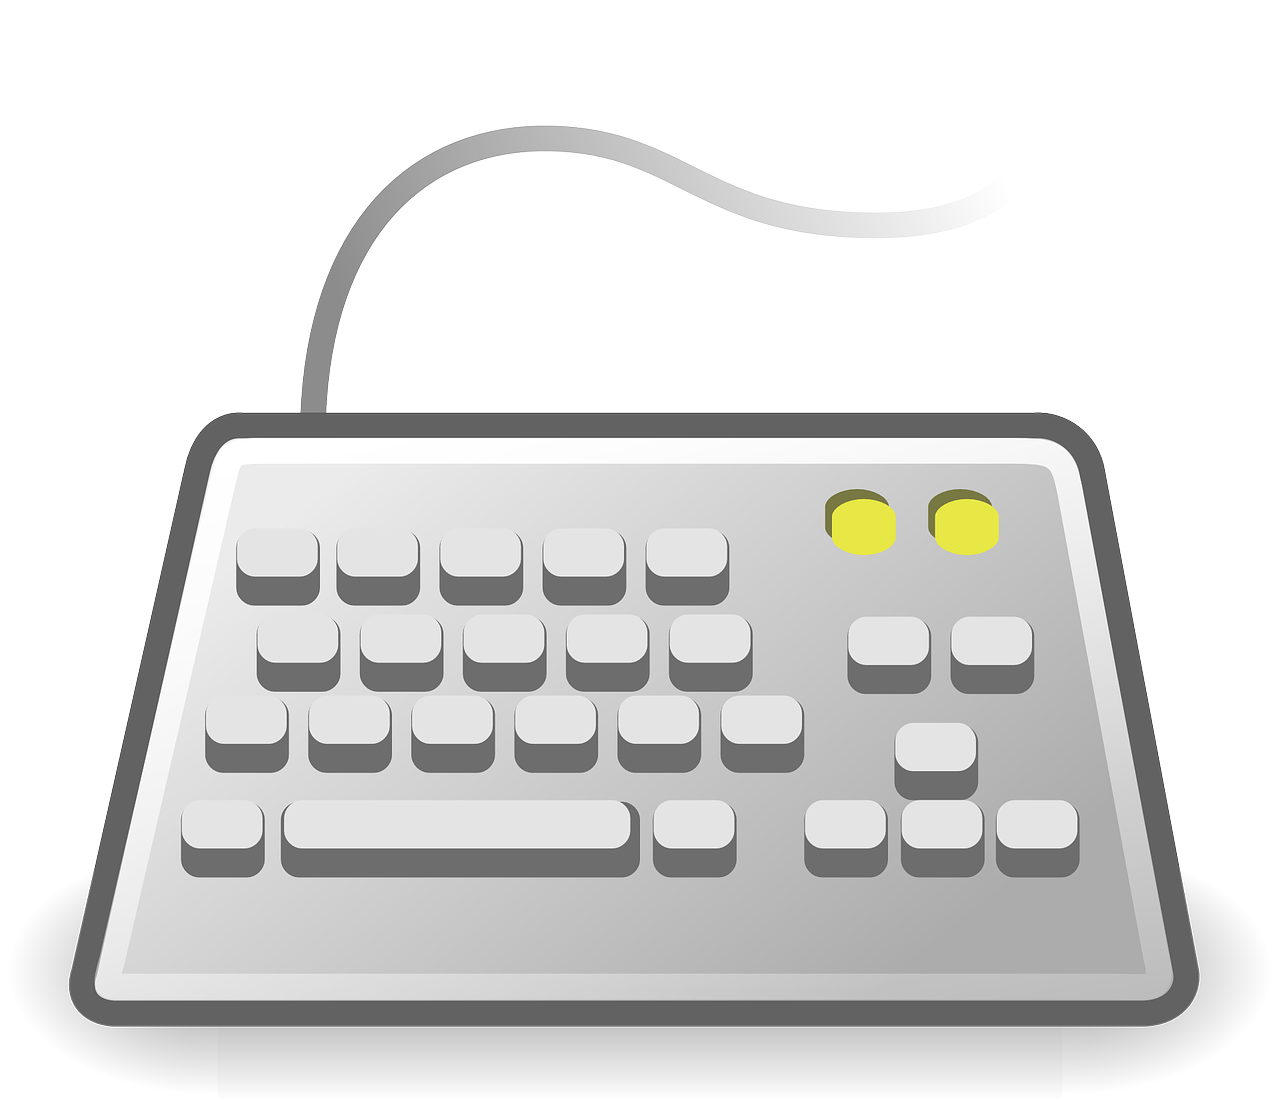 keyboard input input device free photo